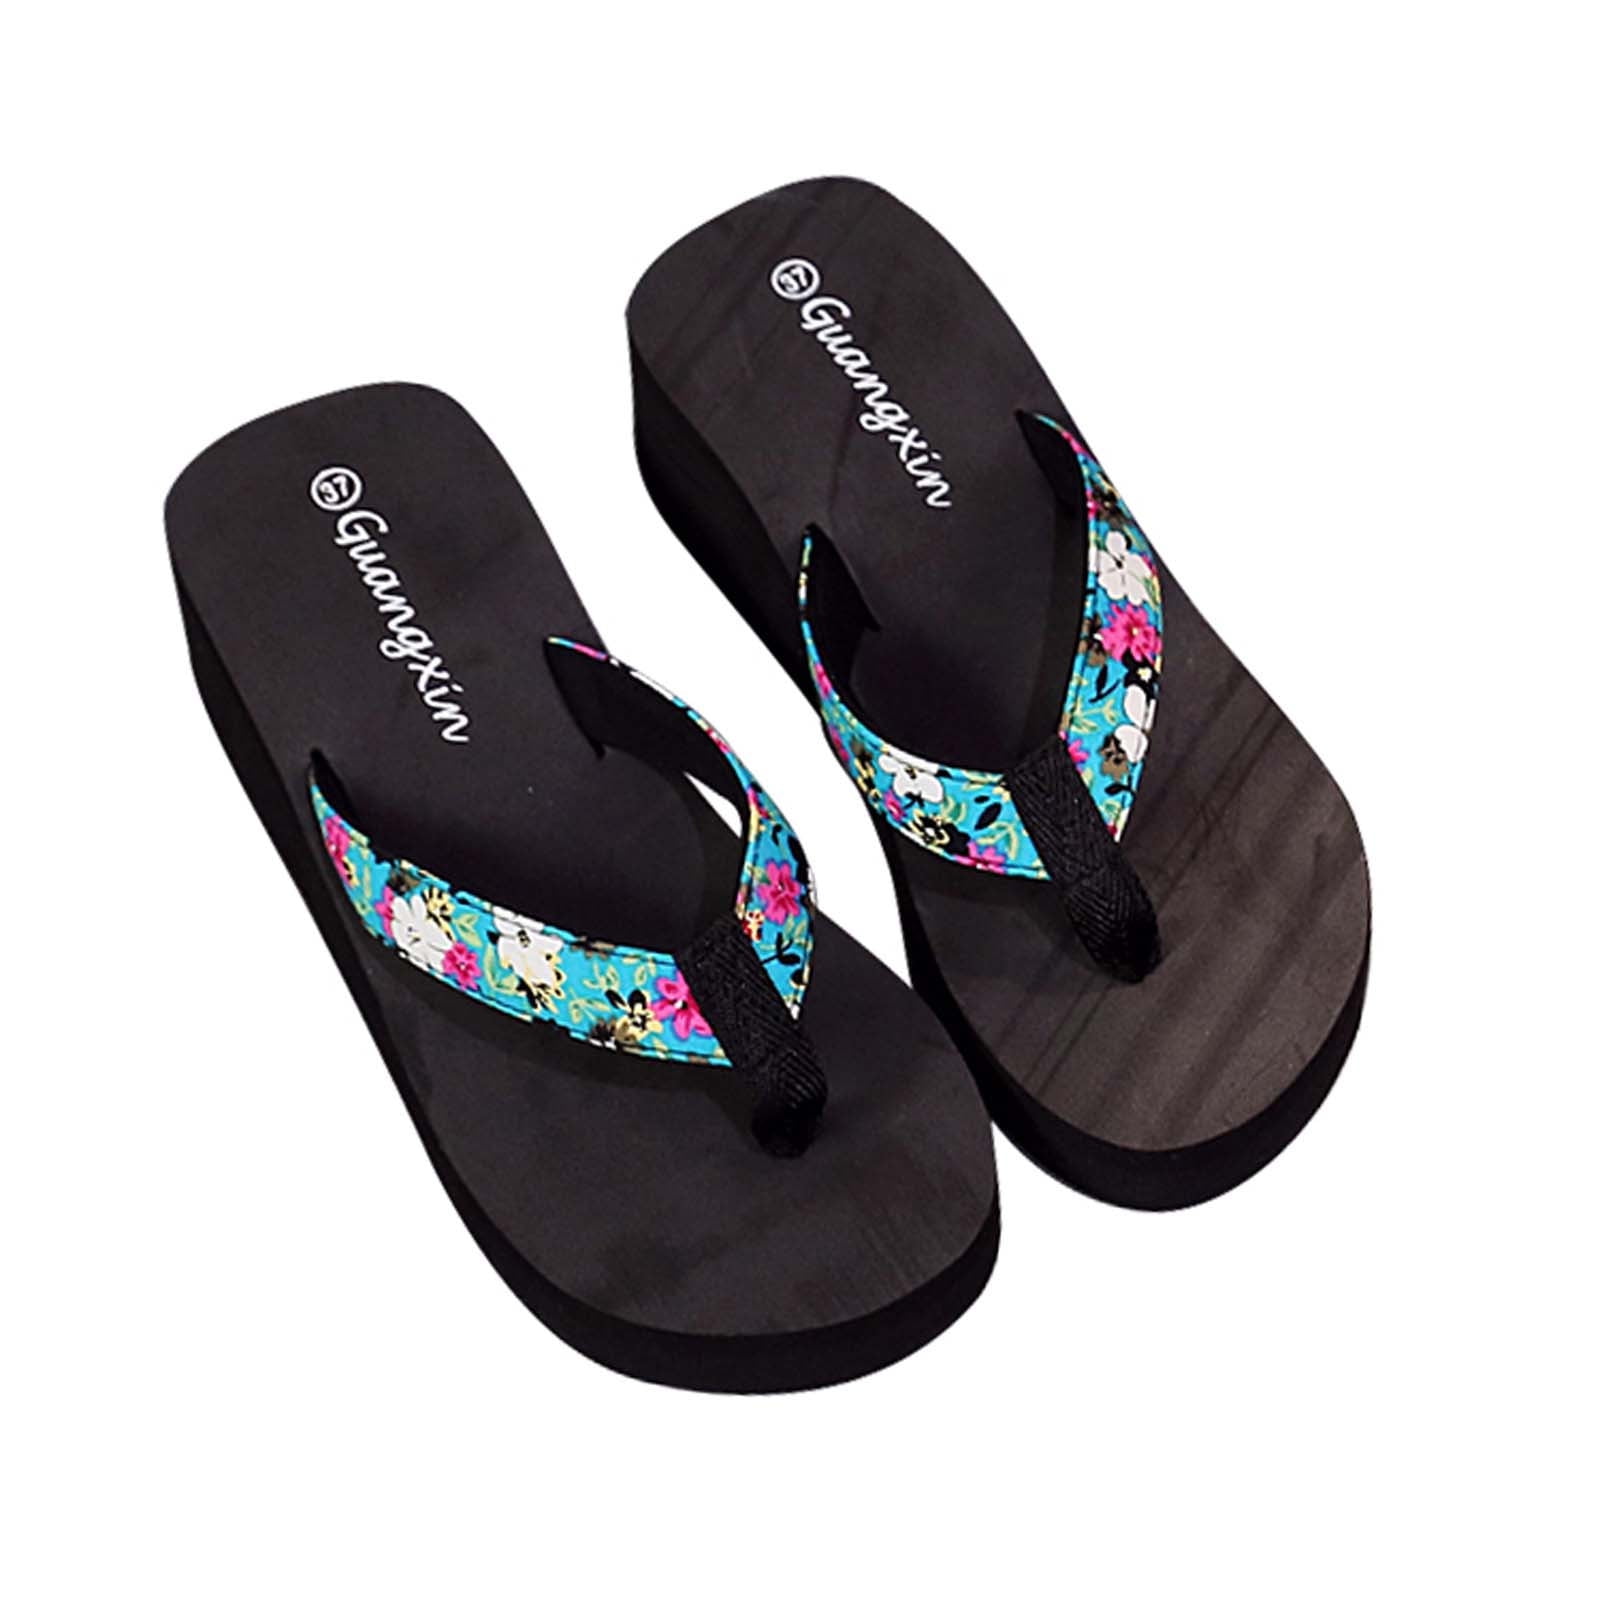 Babysbule Women's Slippers Clearance, Women's Summer Floral Flip-Flops ...